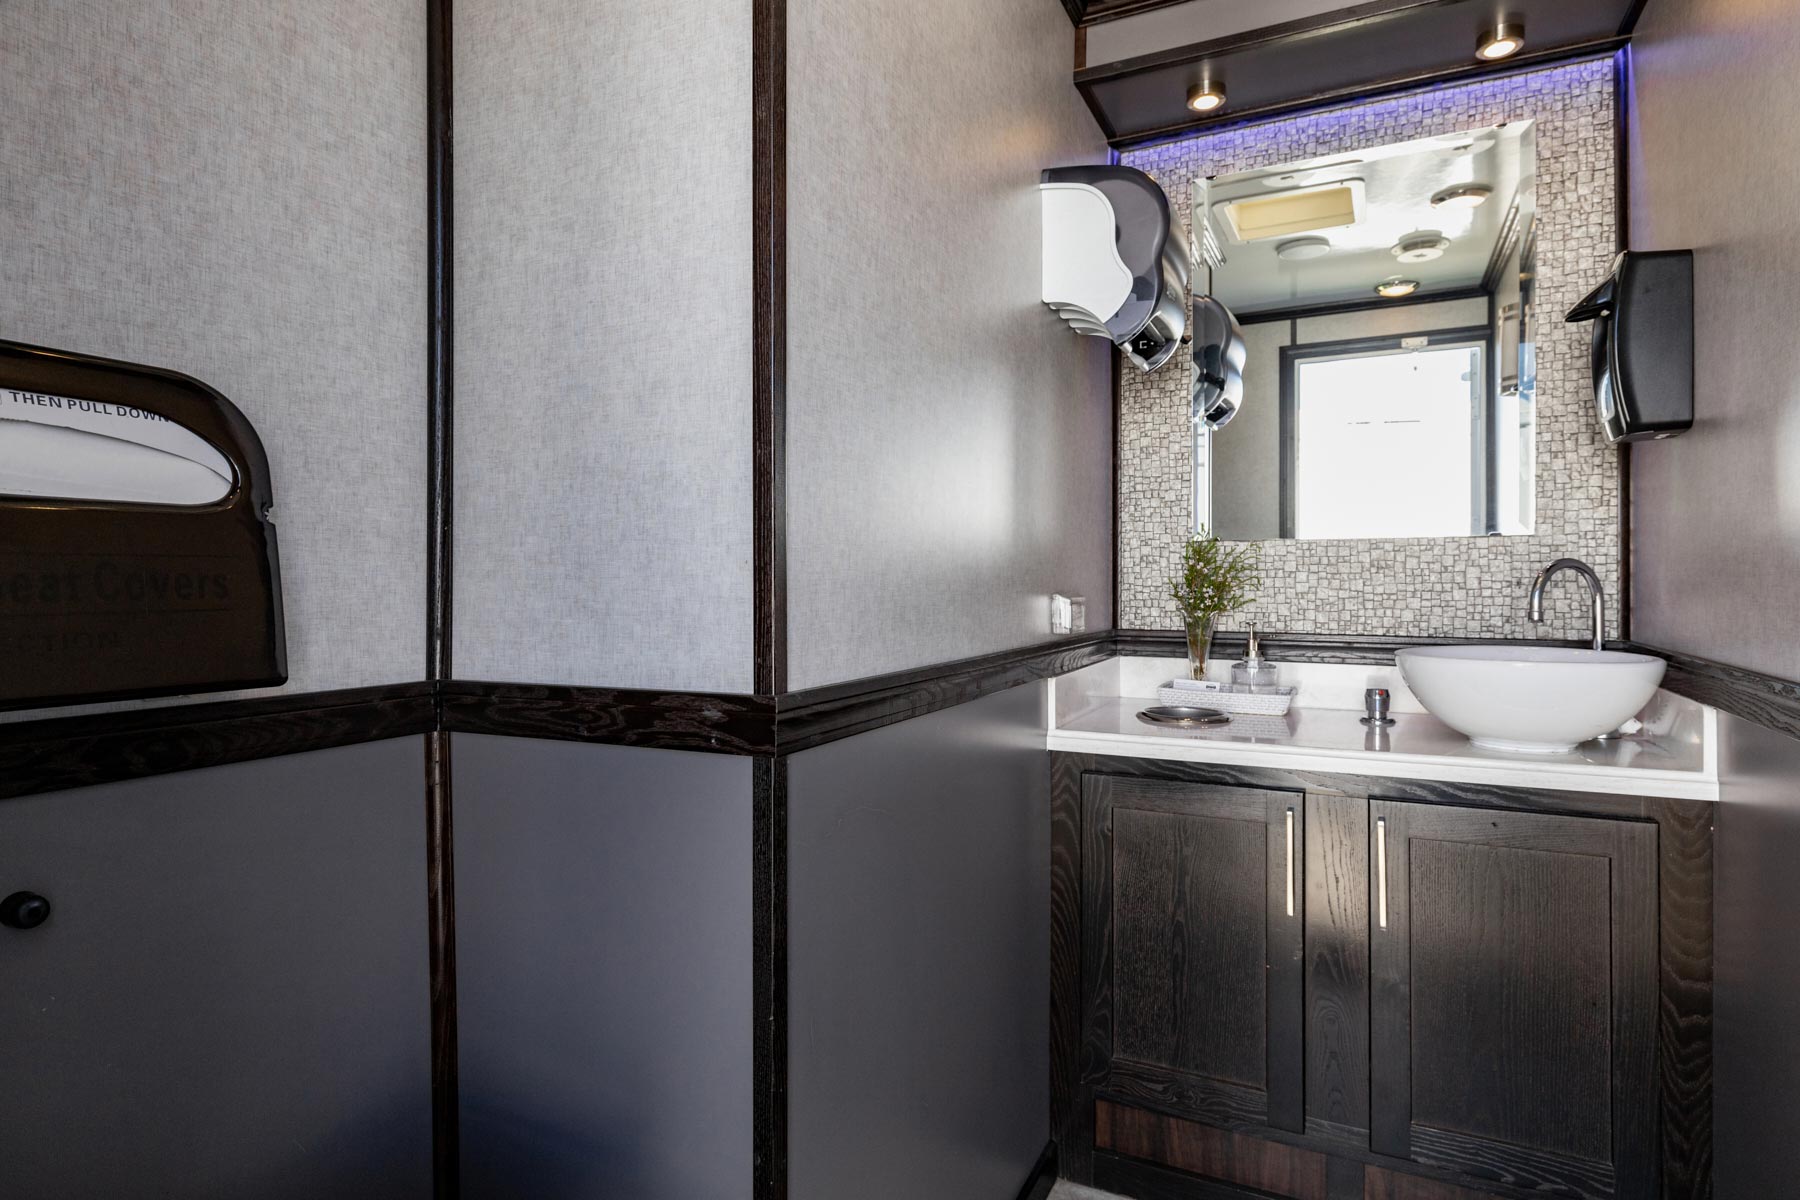 2-Station Luxury Restroom Trailer Rental – Interior View 2